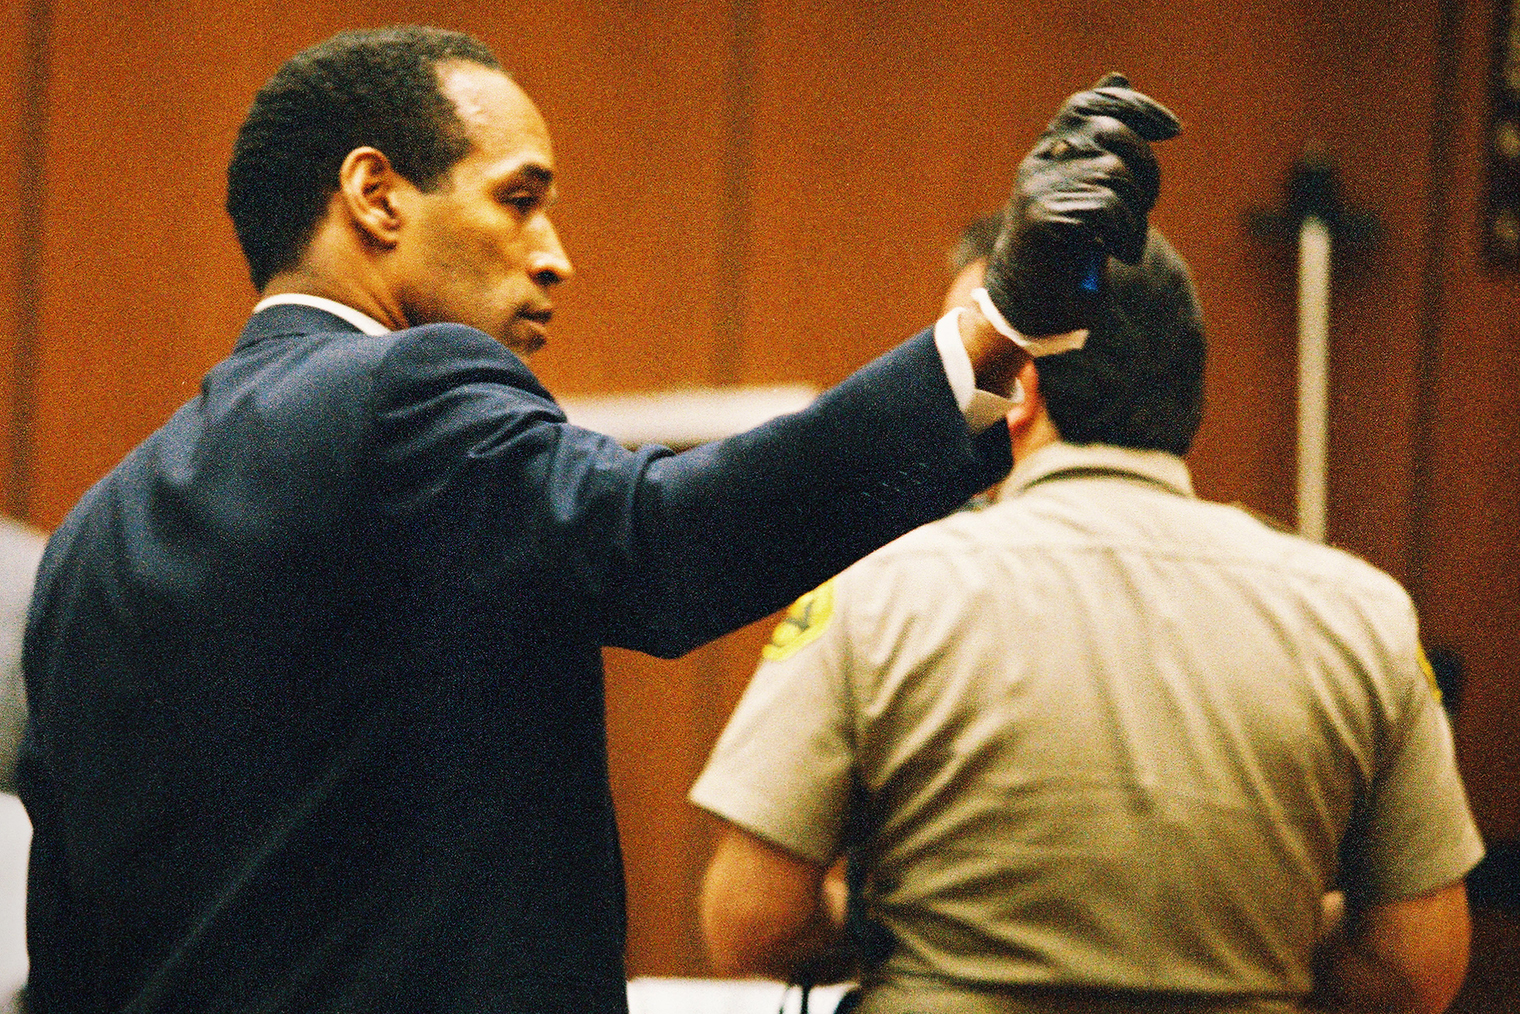 Один из самых известных моментов судебных теледрам: О’Джей Симпсон примеряет перчатки, найденные на месте убийства. Они оказываются ему малы. Источник: Фотография: Lee Celano / Getty Images